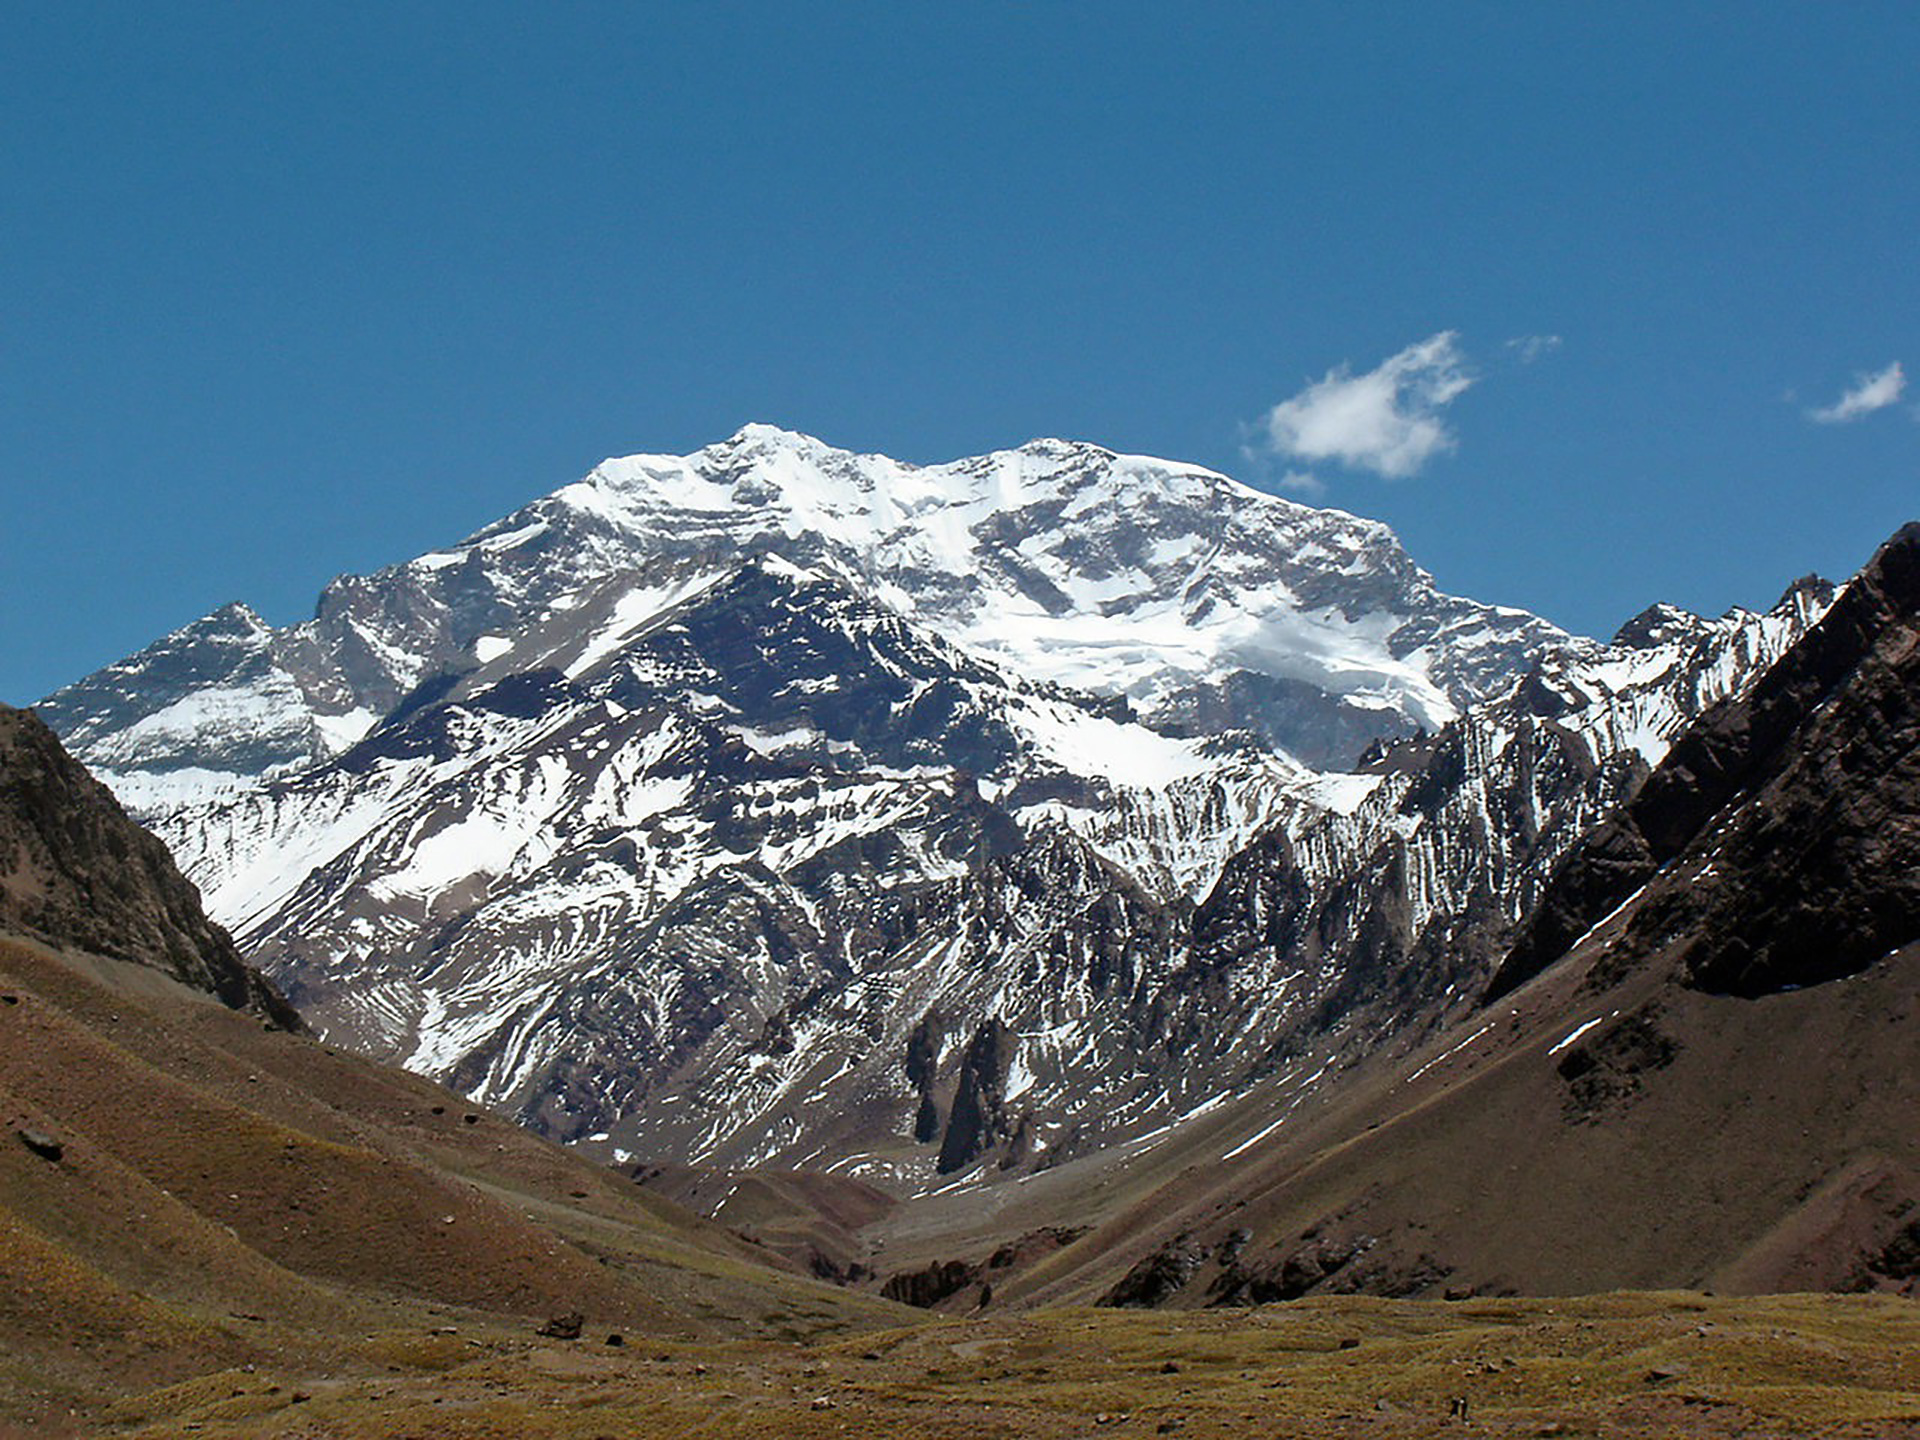 La cima del Aconcagua es el punto más alto de América (Wikipedia)